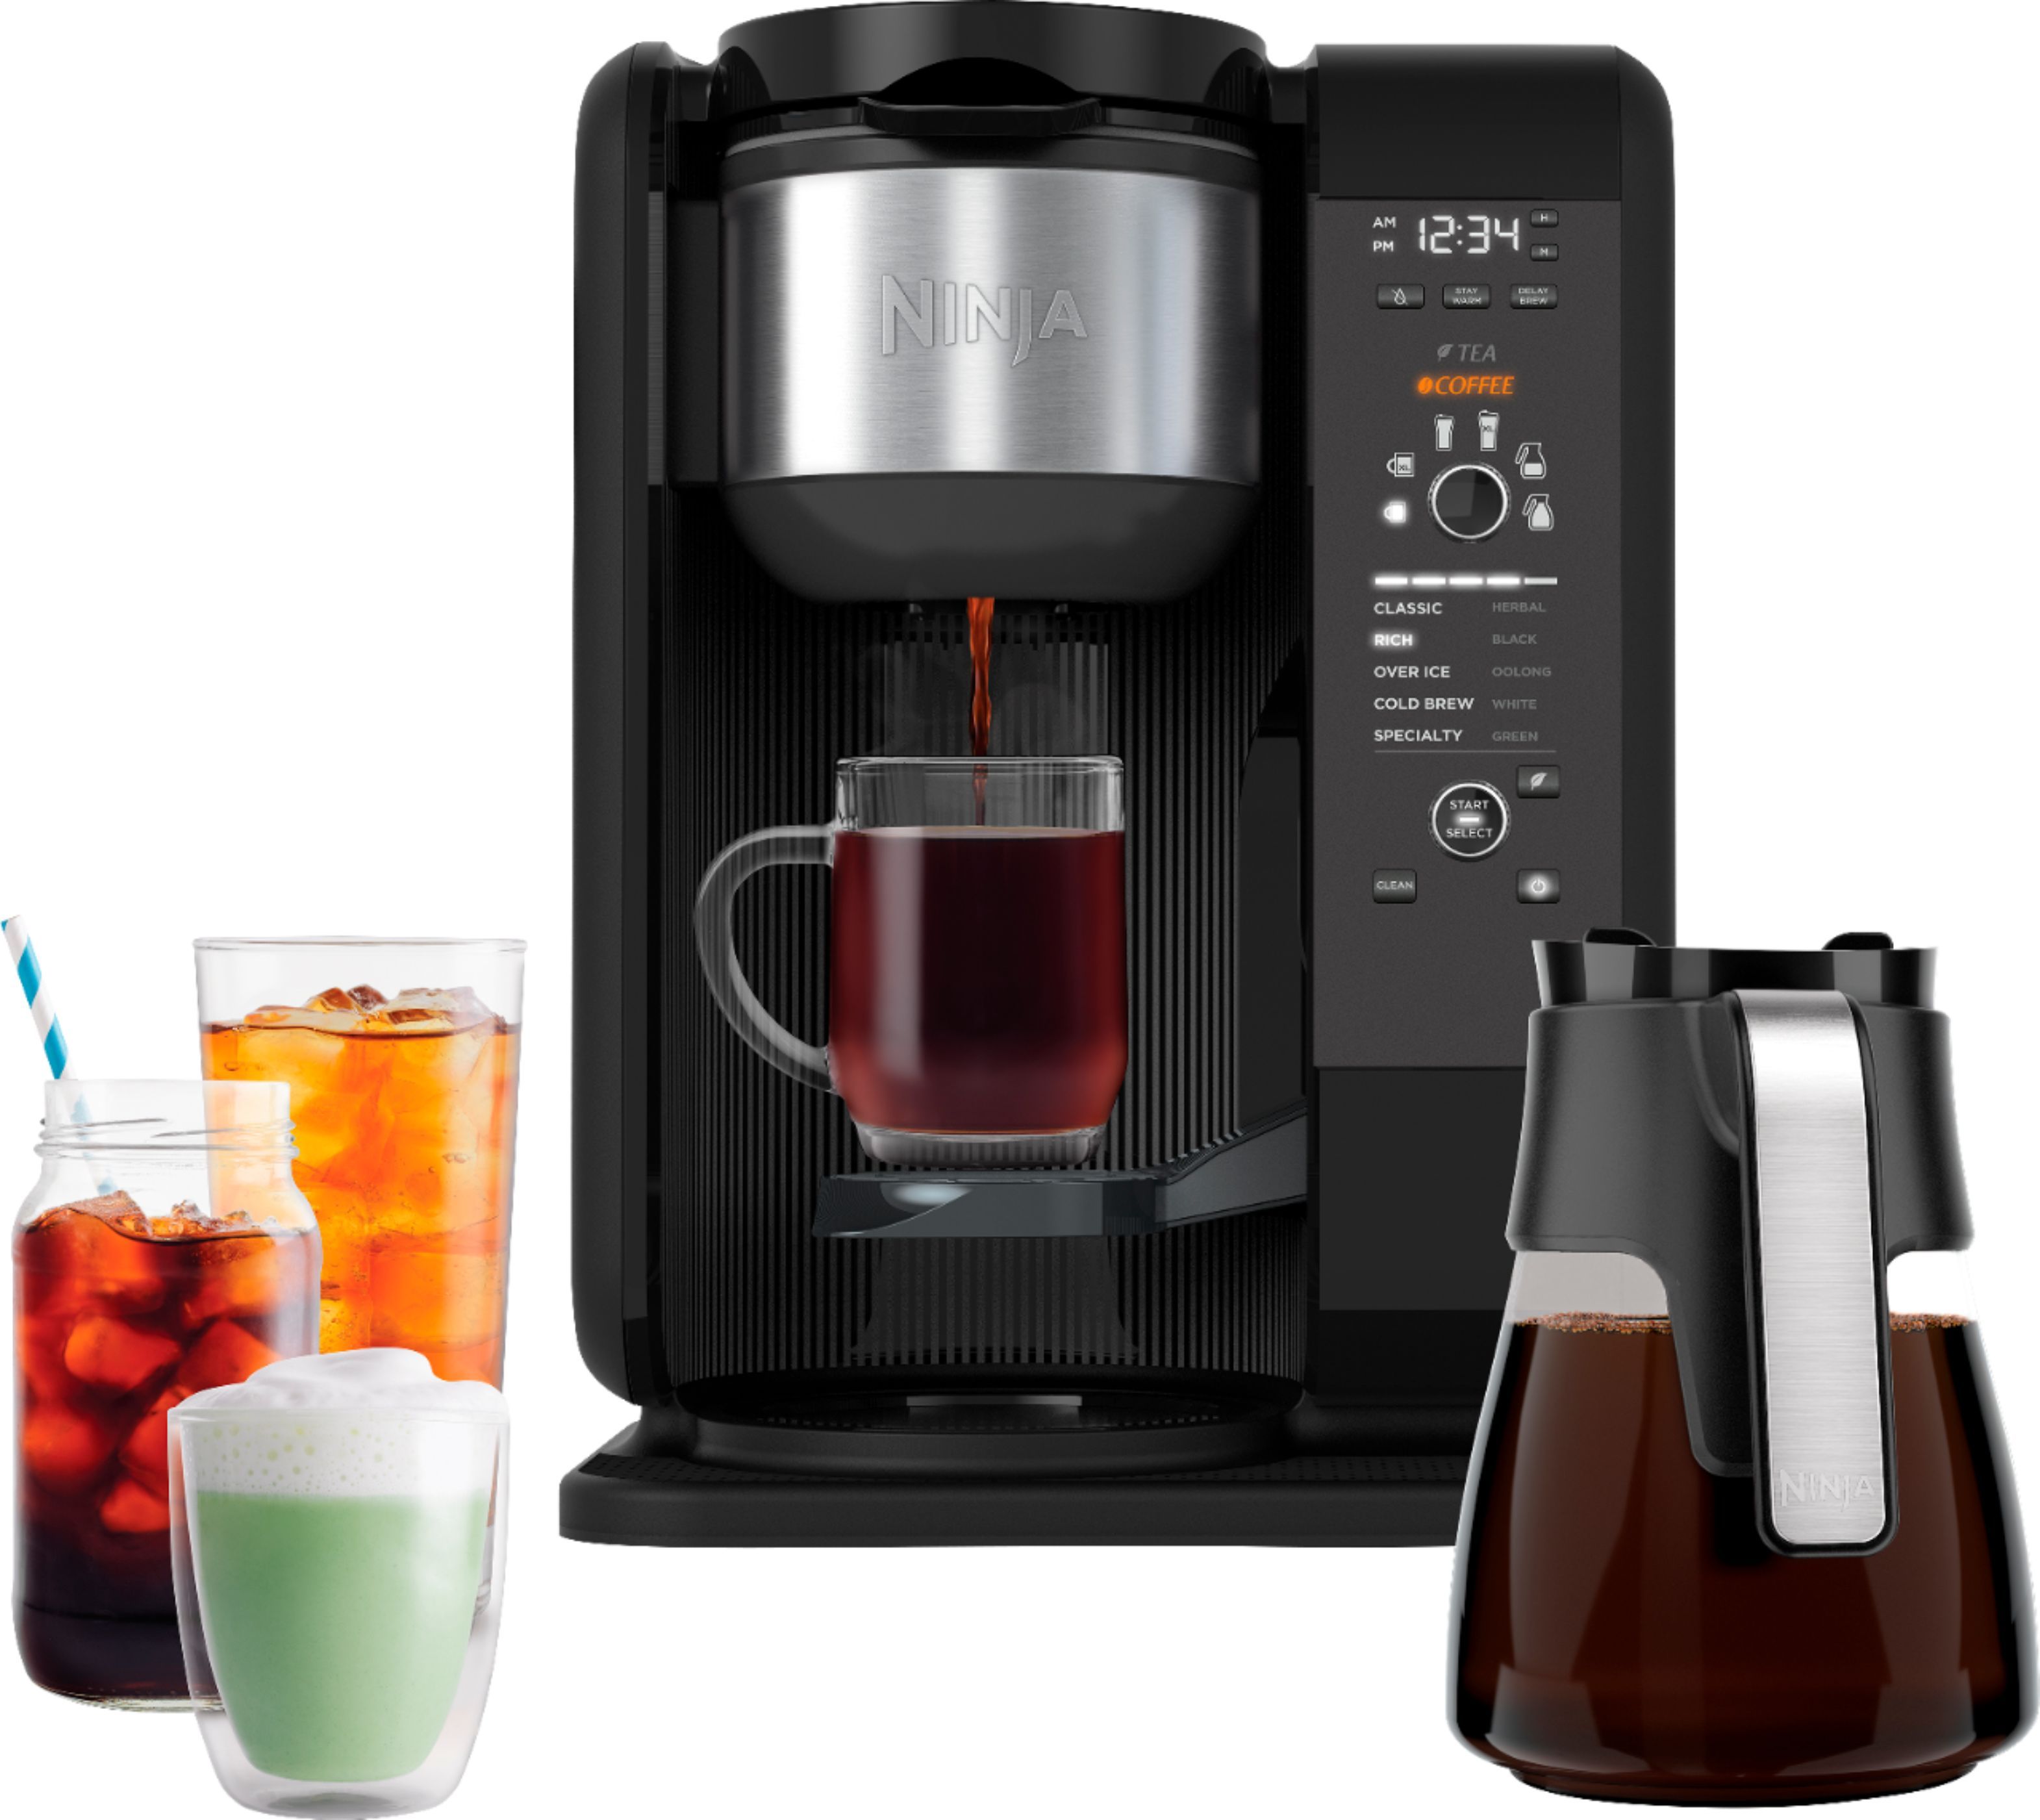 Ninja Hot & Cold Brew 10-Cup Coffee Maker Black/Stainless Steel CP301 - Best Buy | Best Buy U.S.